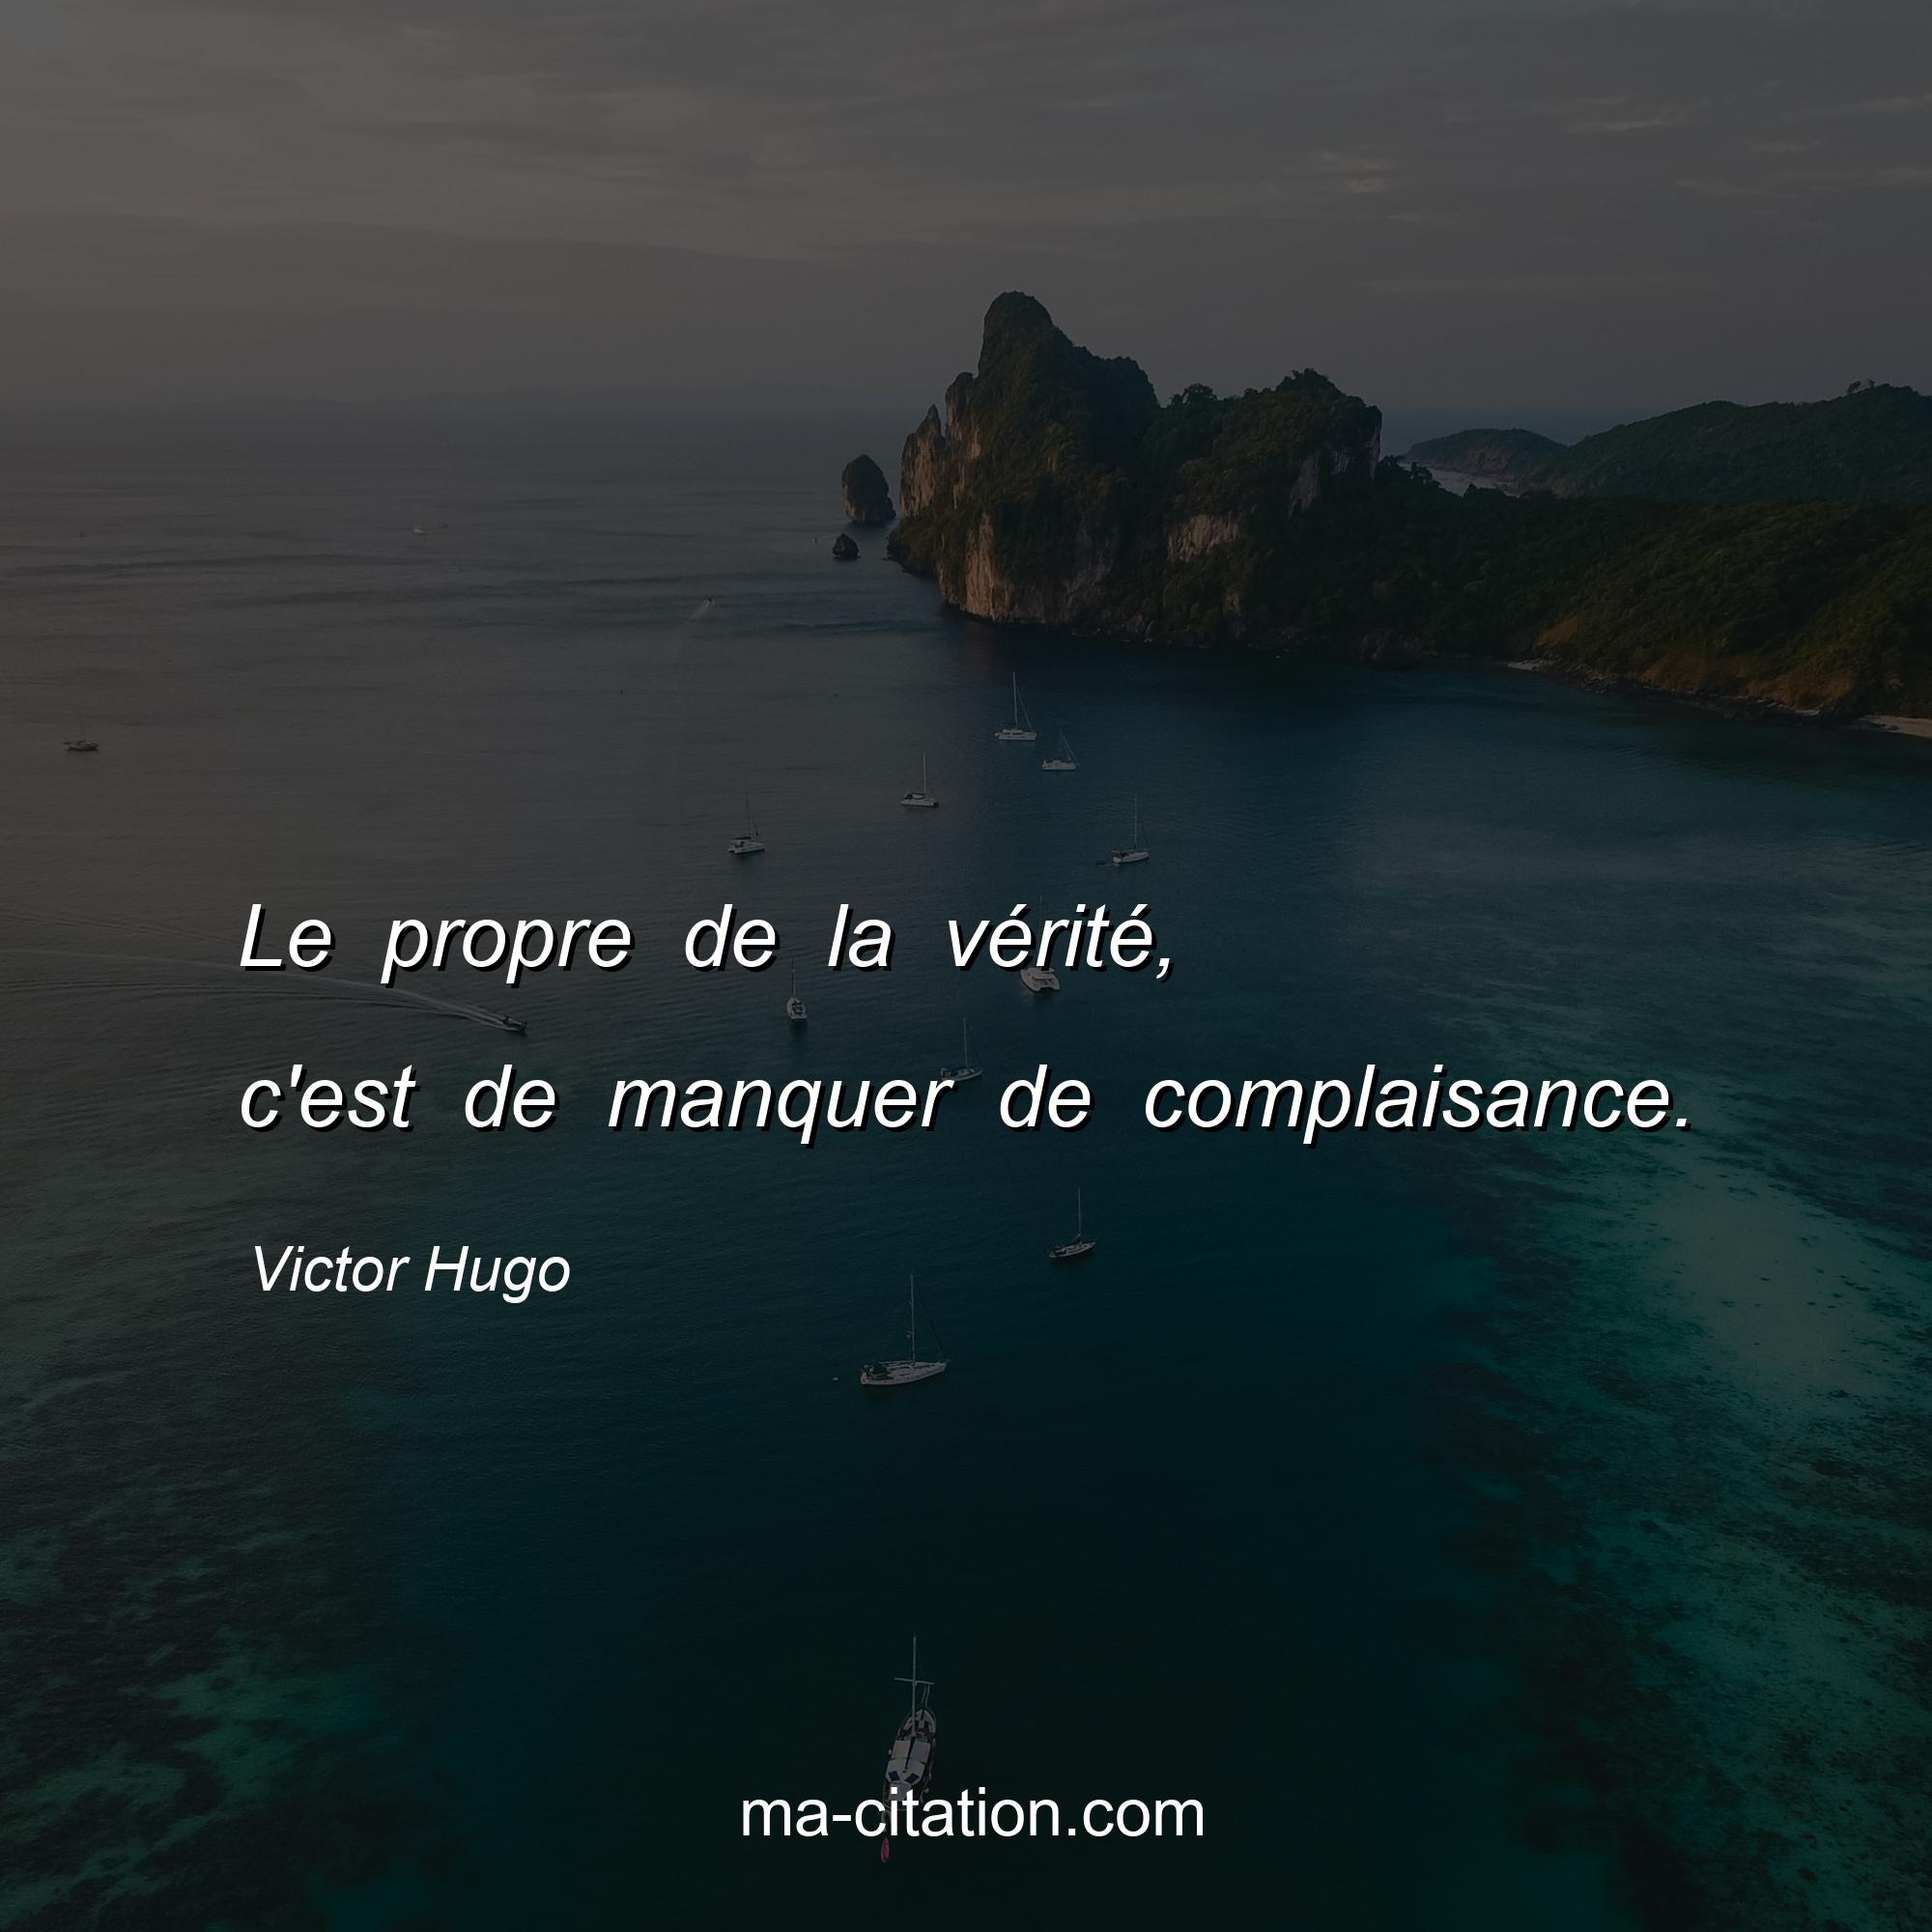 Victor Hugo : Le propre de la vérité, c'est de manquer de complaisance.